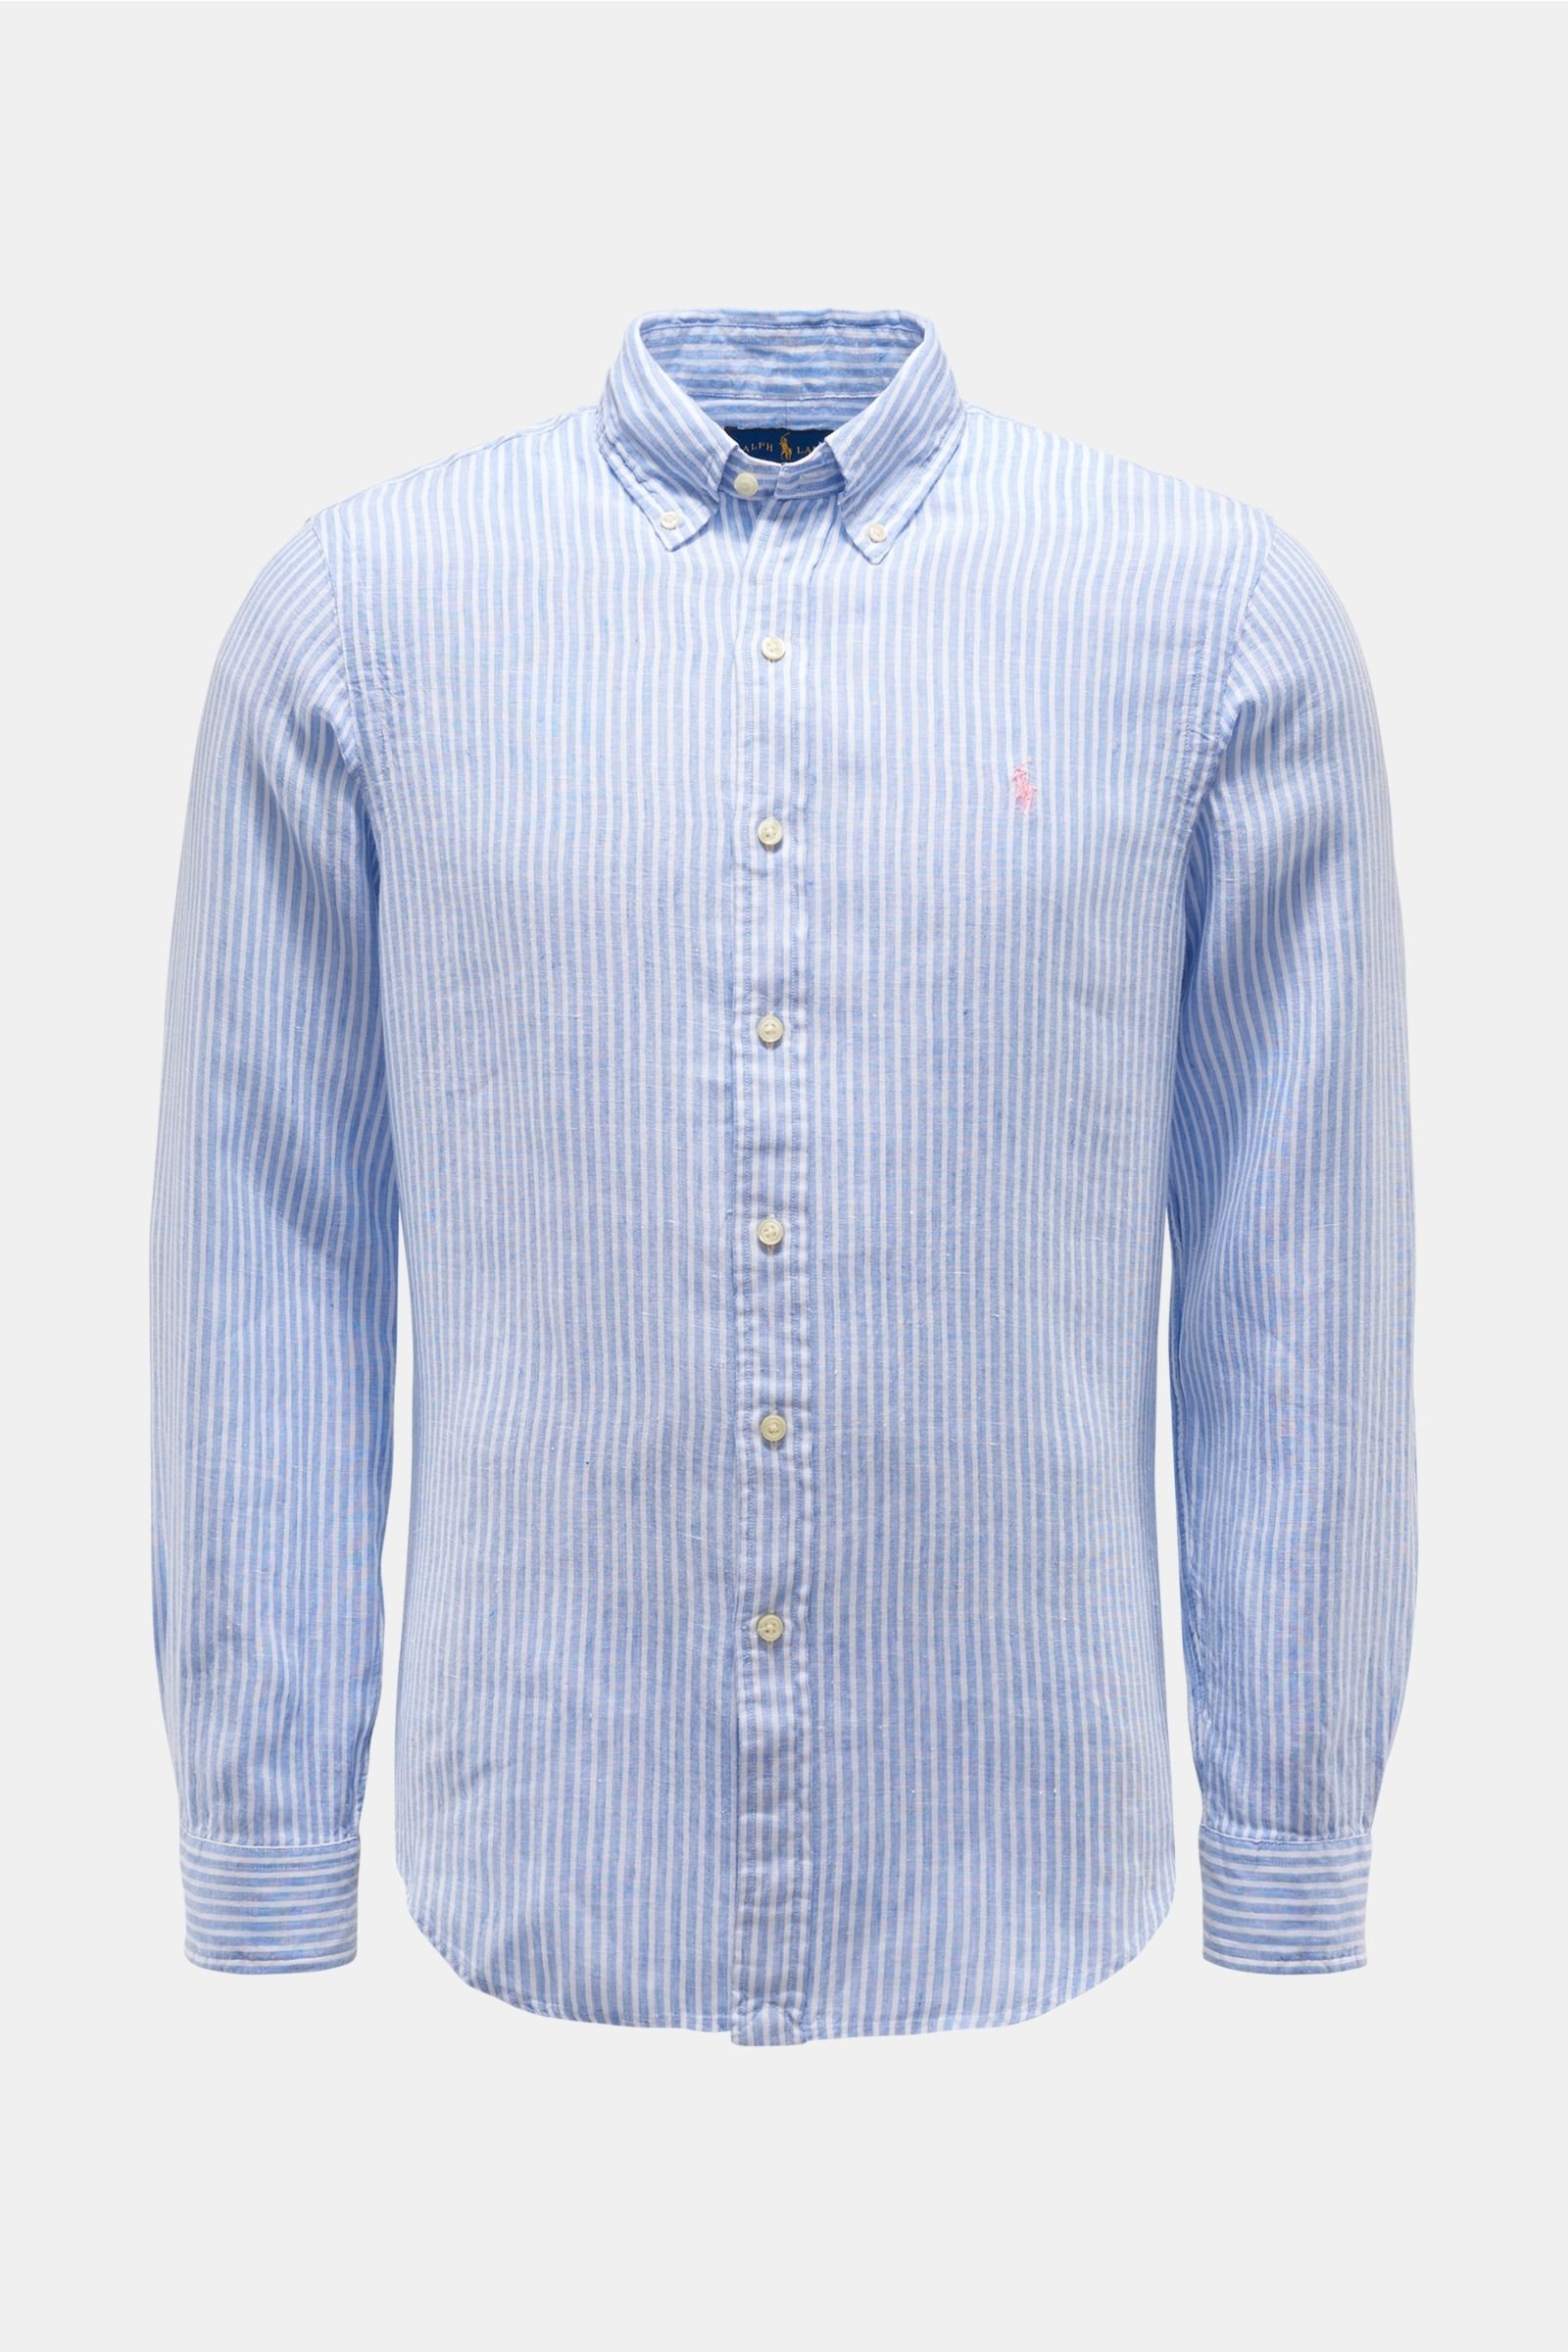 Linen shirt button-down collar light blue/white striped